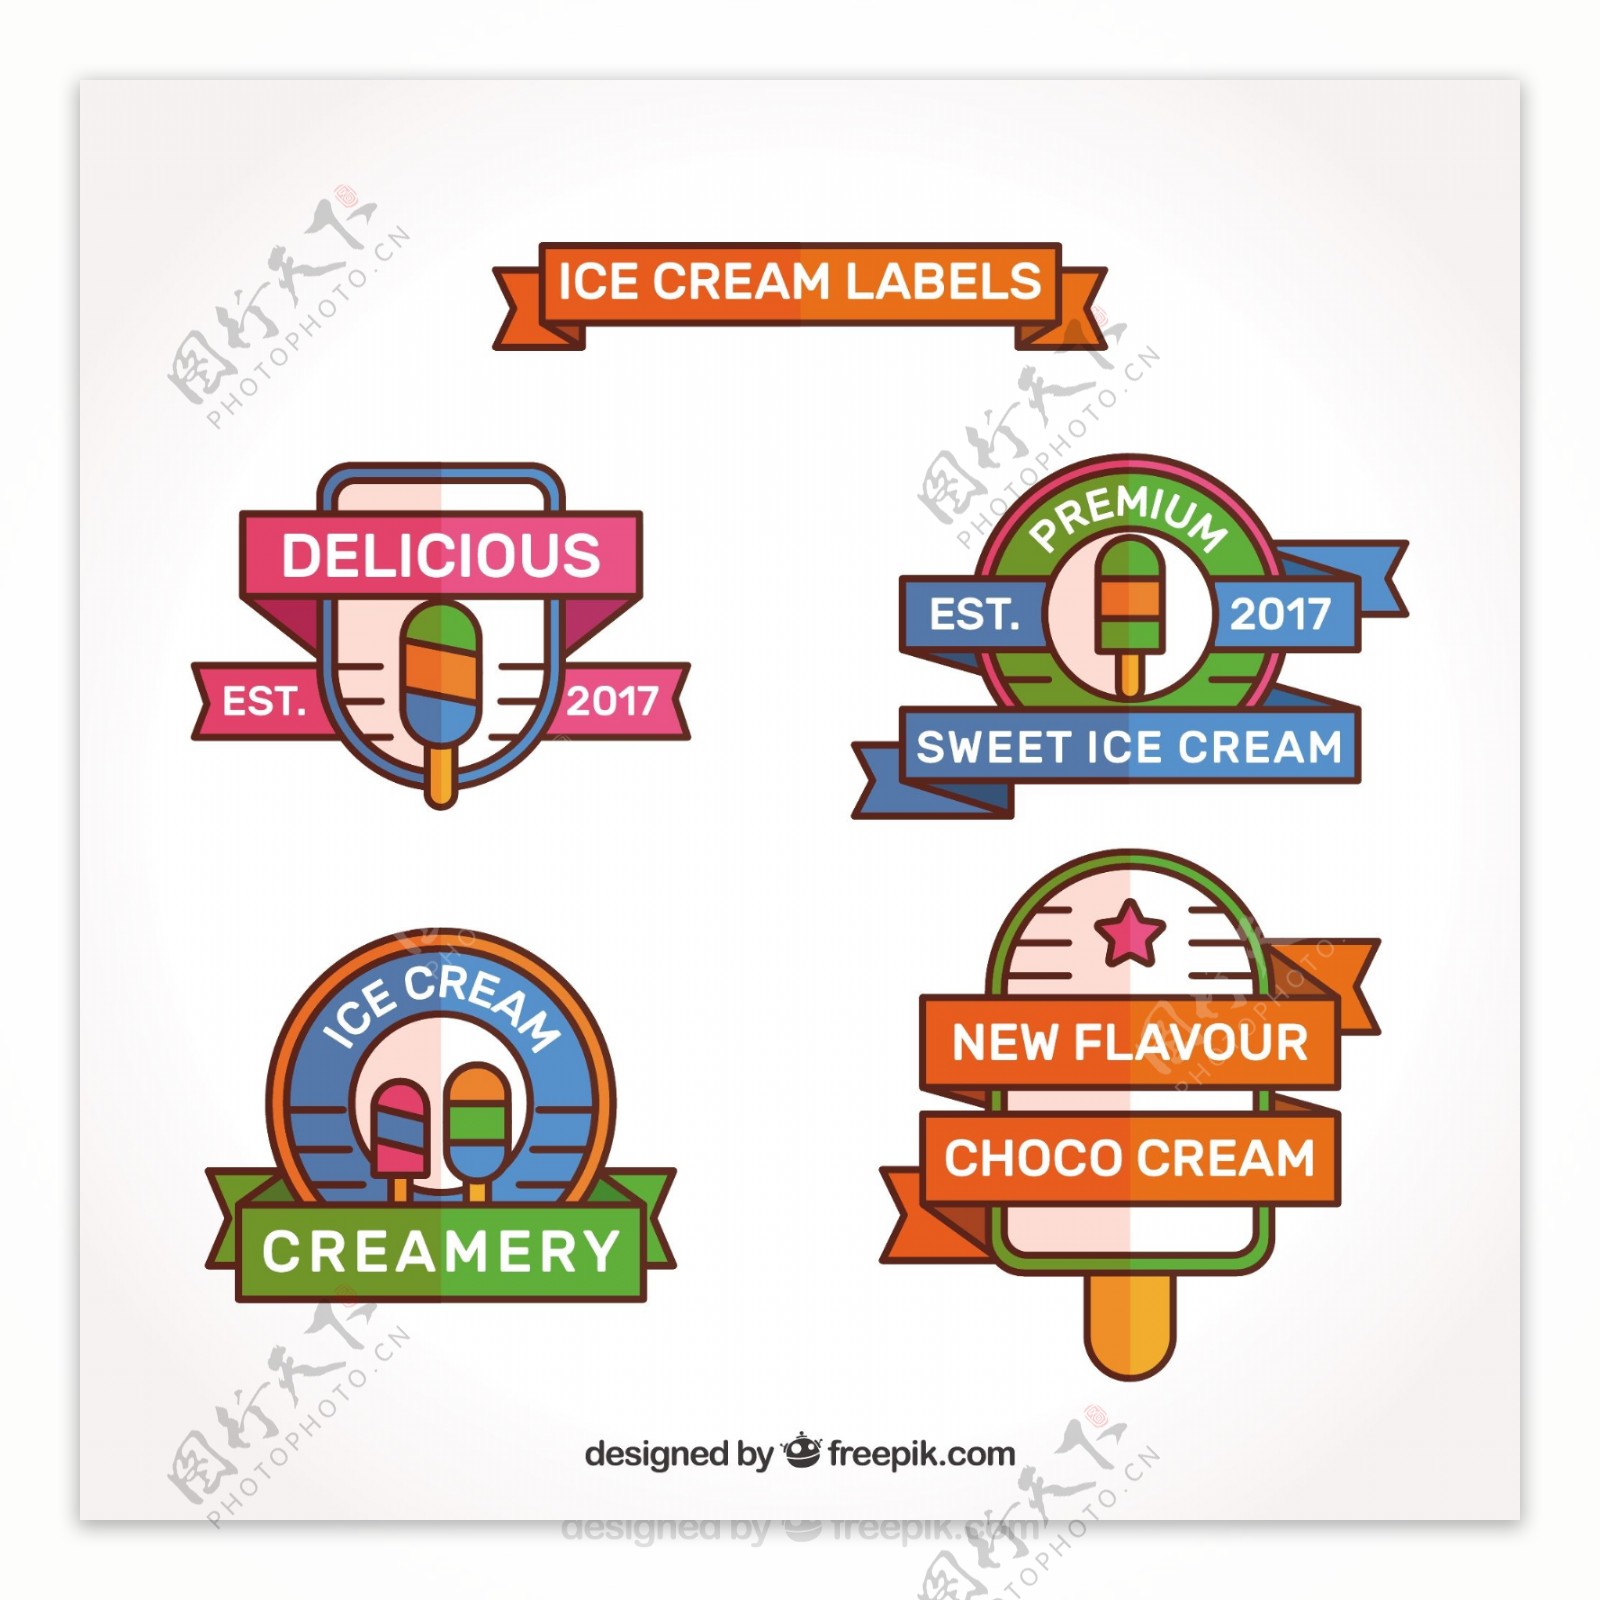 平面设计中四种冰淇淋贴纸的选择